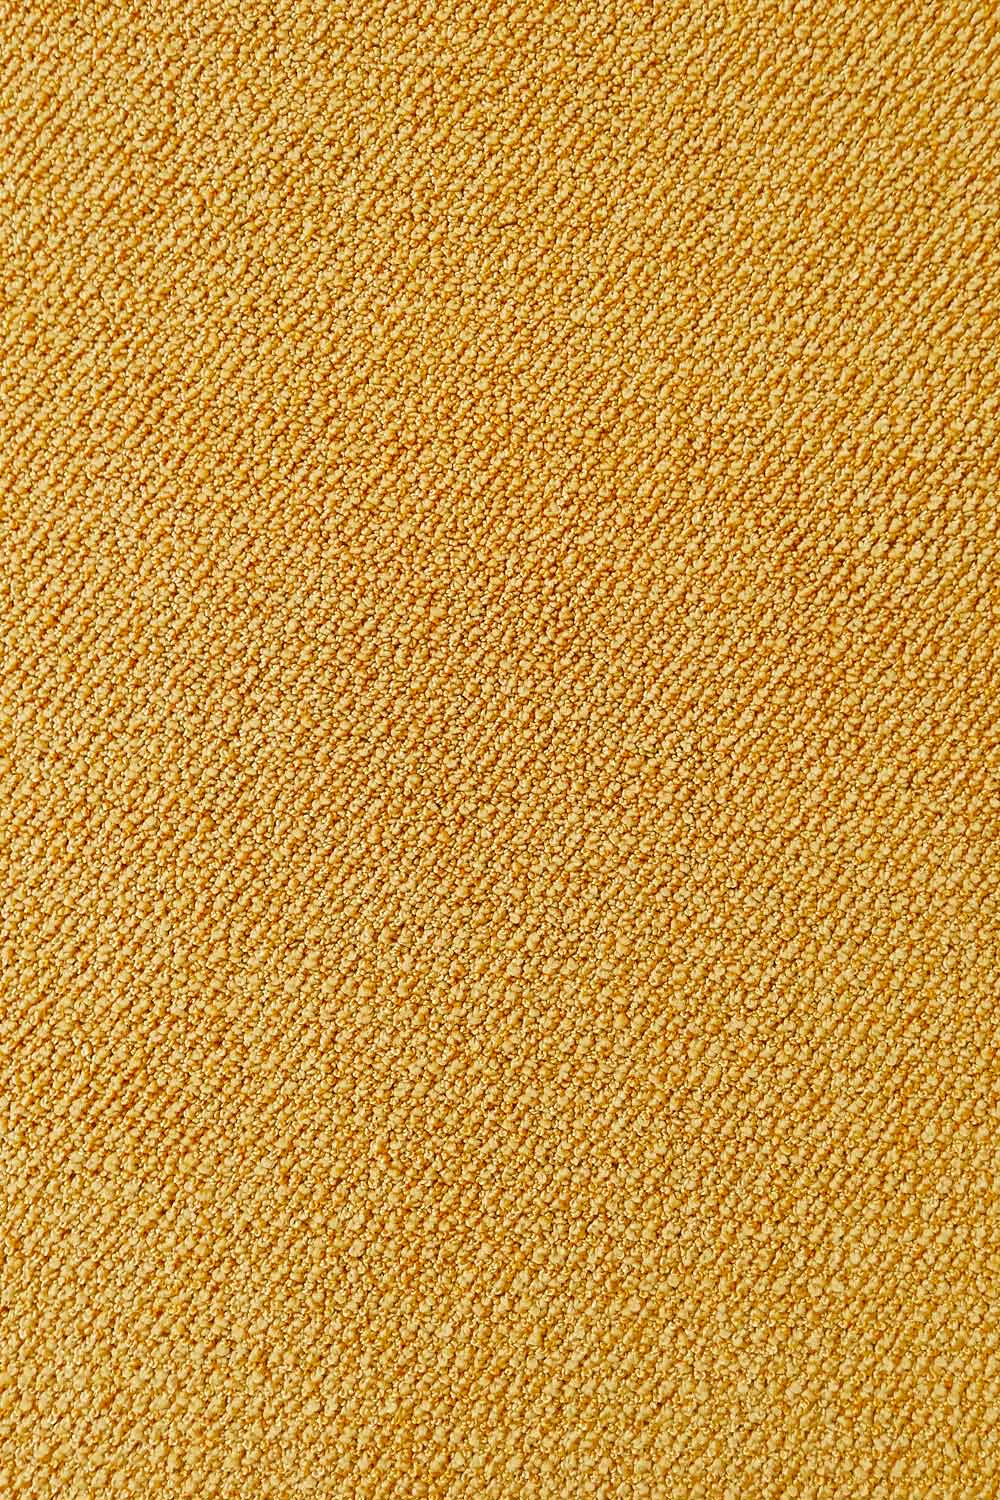 Metrážny koberec Corvino 51 400 cm